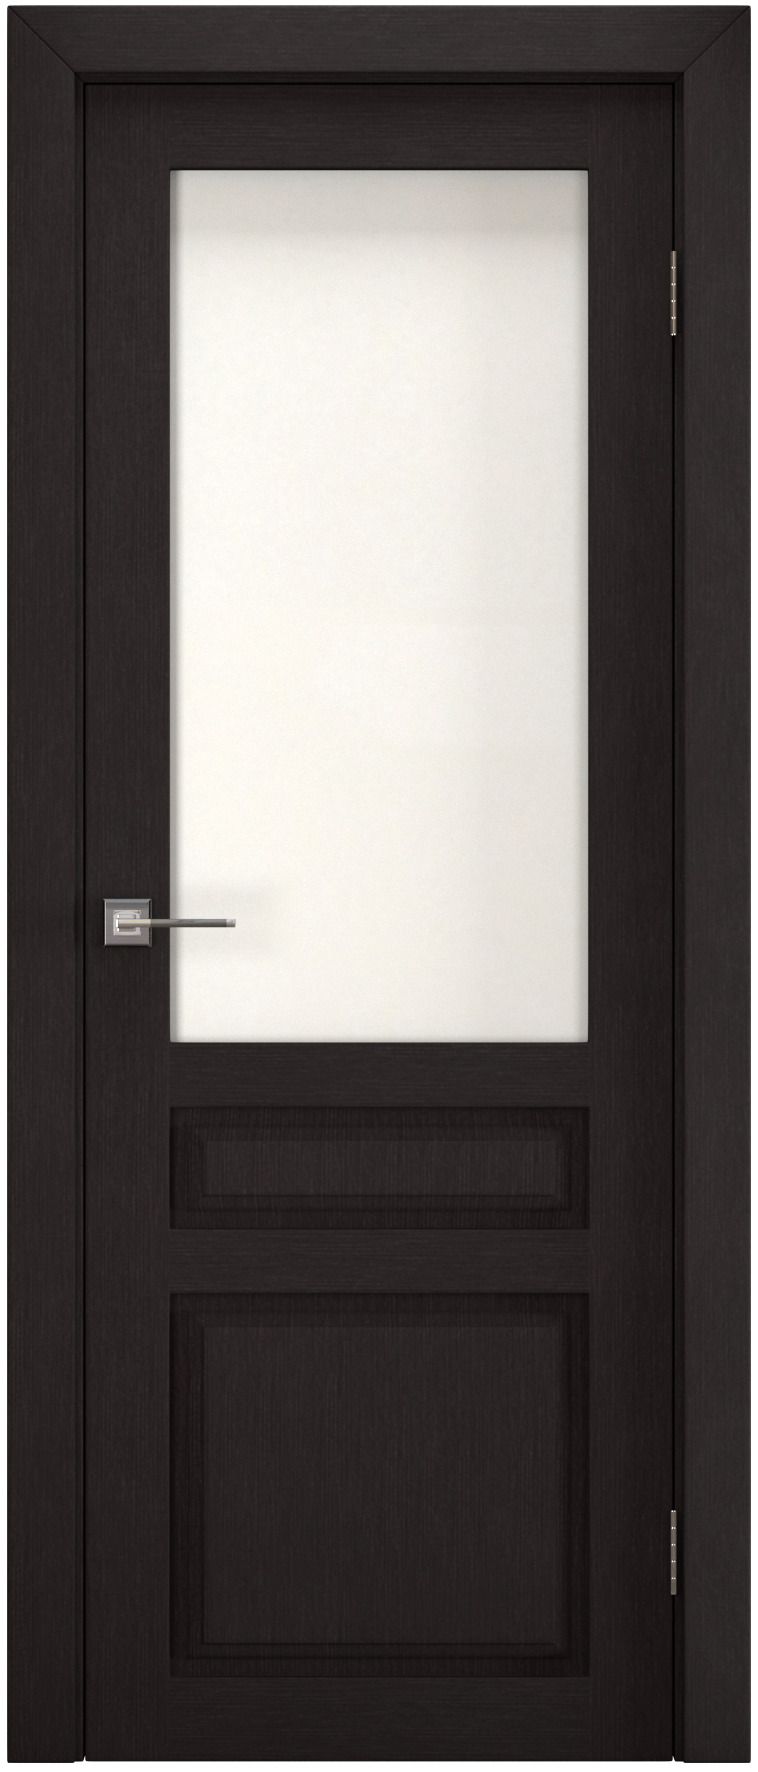 Полотно дверное остекленное Эко-шпон Британь 2000*700 Каштан, ст. рисунок "Хрусталь"